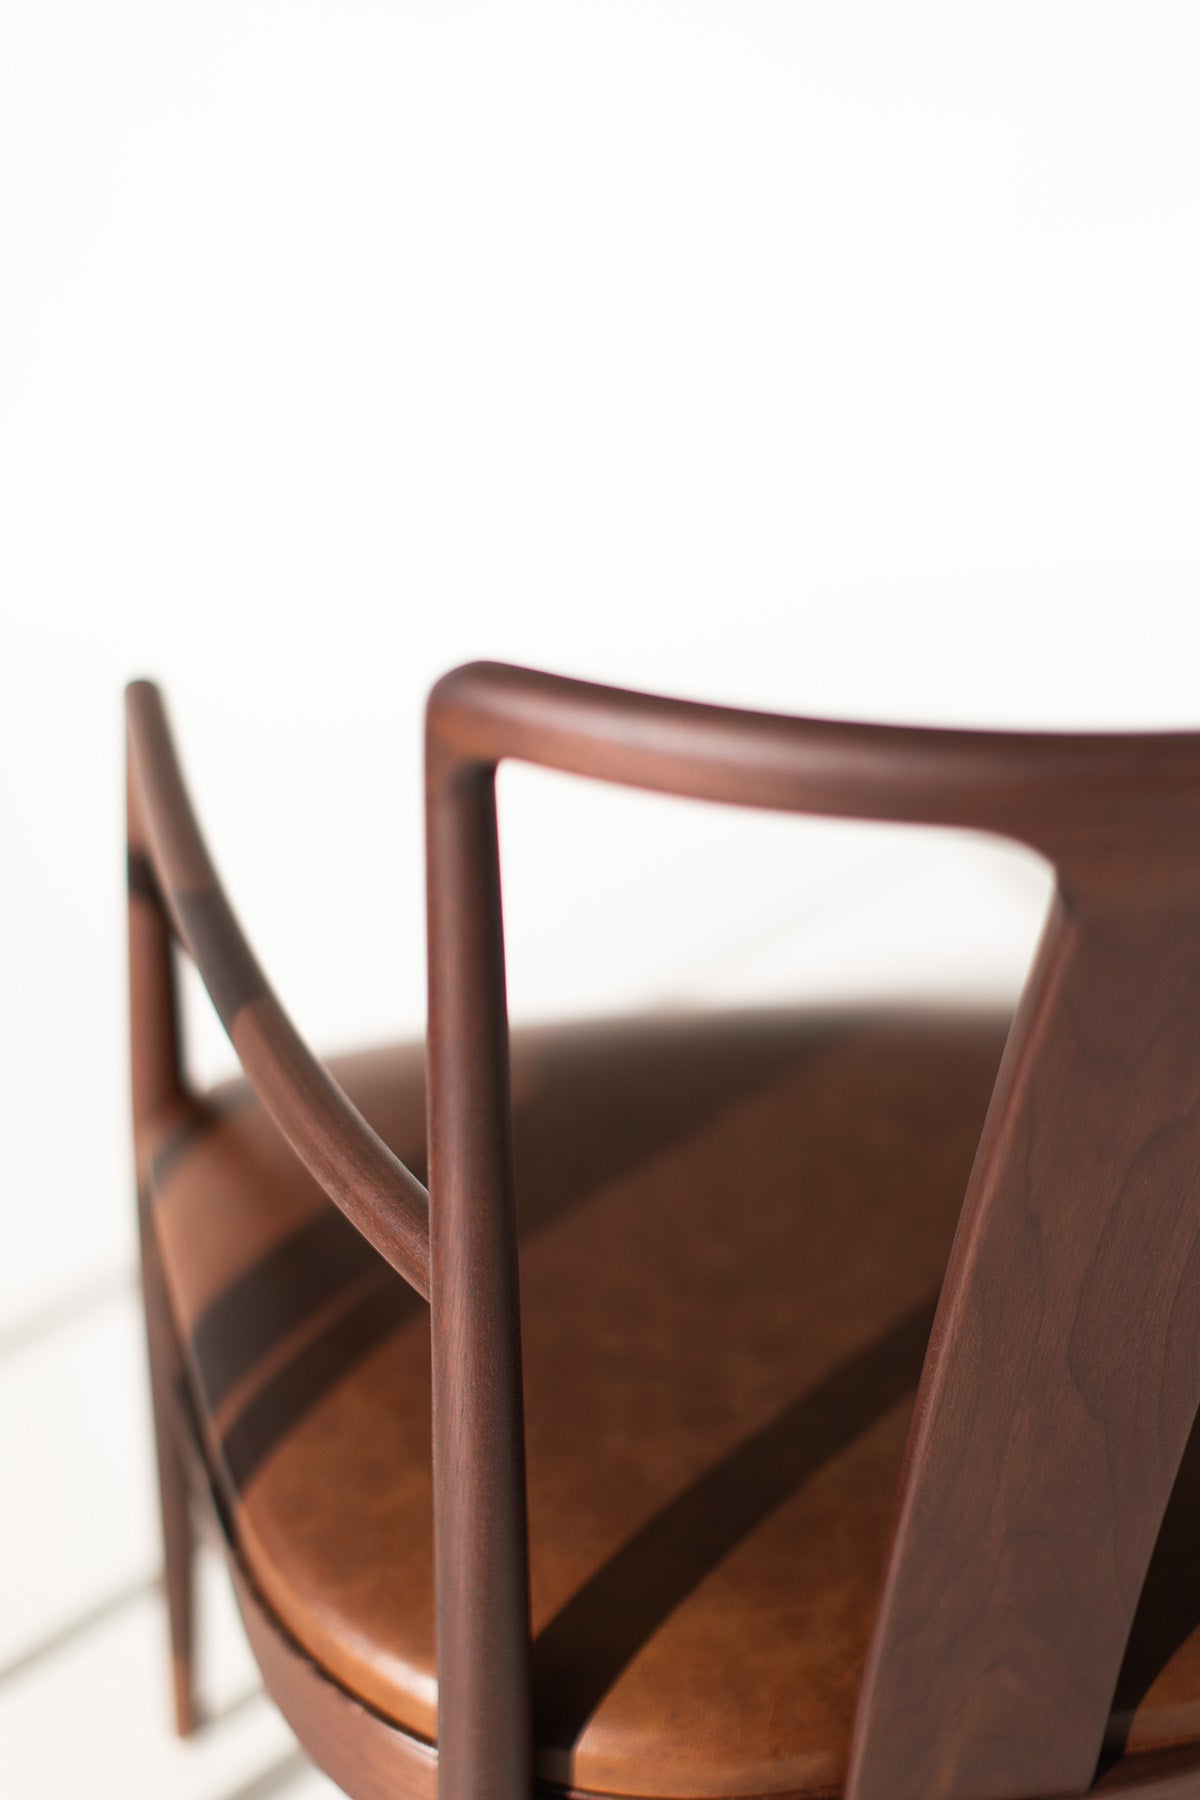 Peabody-Derby-Modern-Wood-Dining-Arm-Chair-05